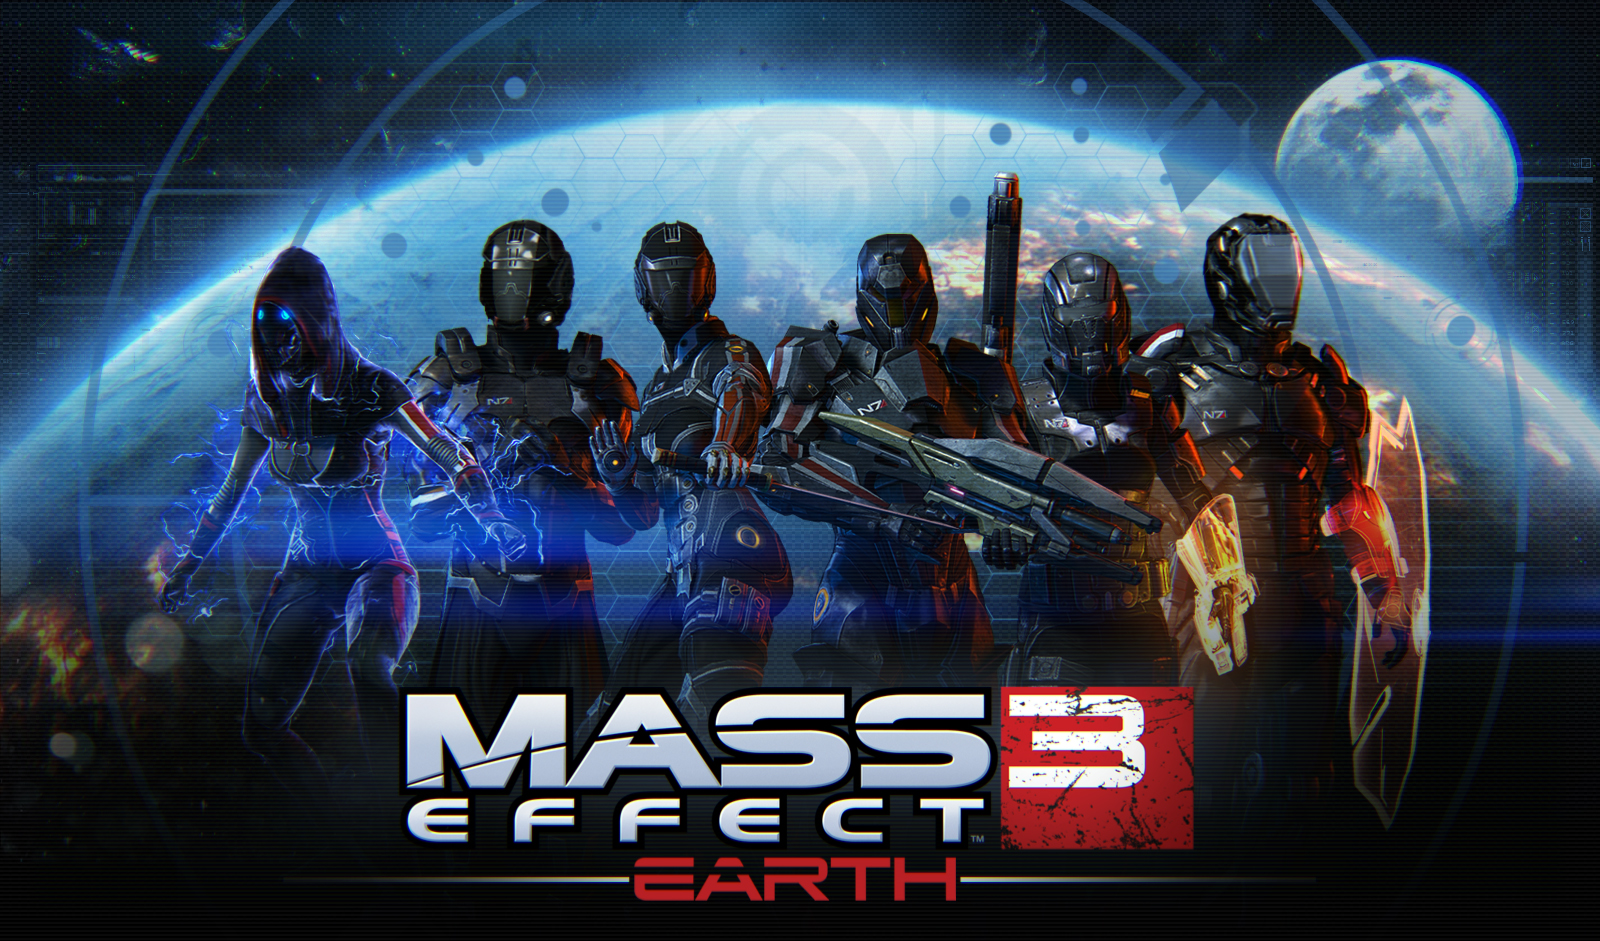 تحميل لعبة mass effect 3 ماس افكت 3 للكمبيوتر برابط مباشر